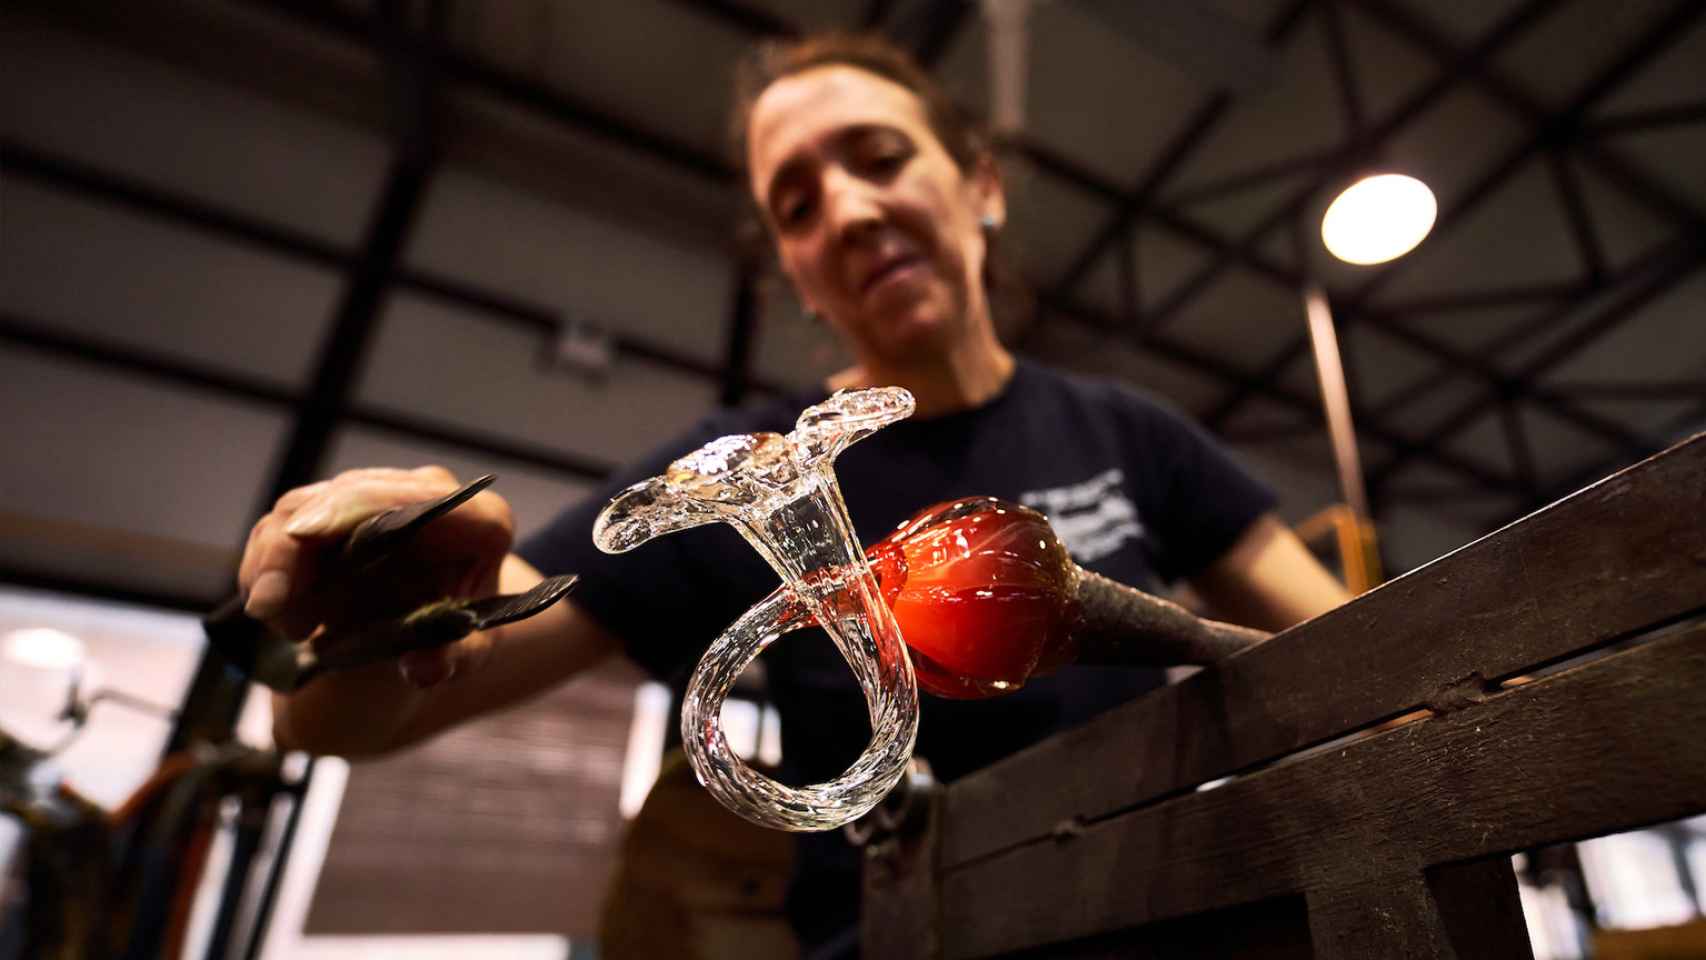 Técnica de soplado del vidrio en la Real Fábrica de Cristales de La Granja